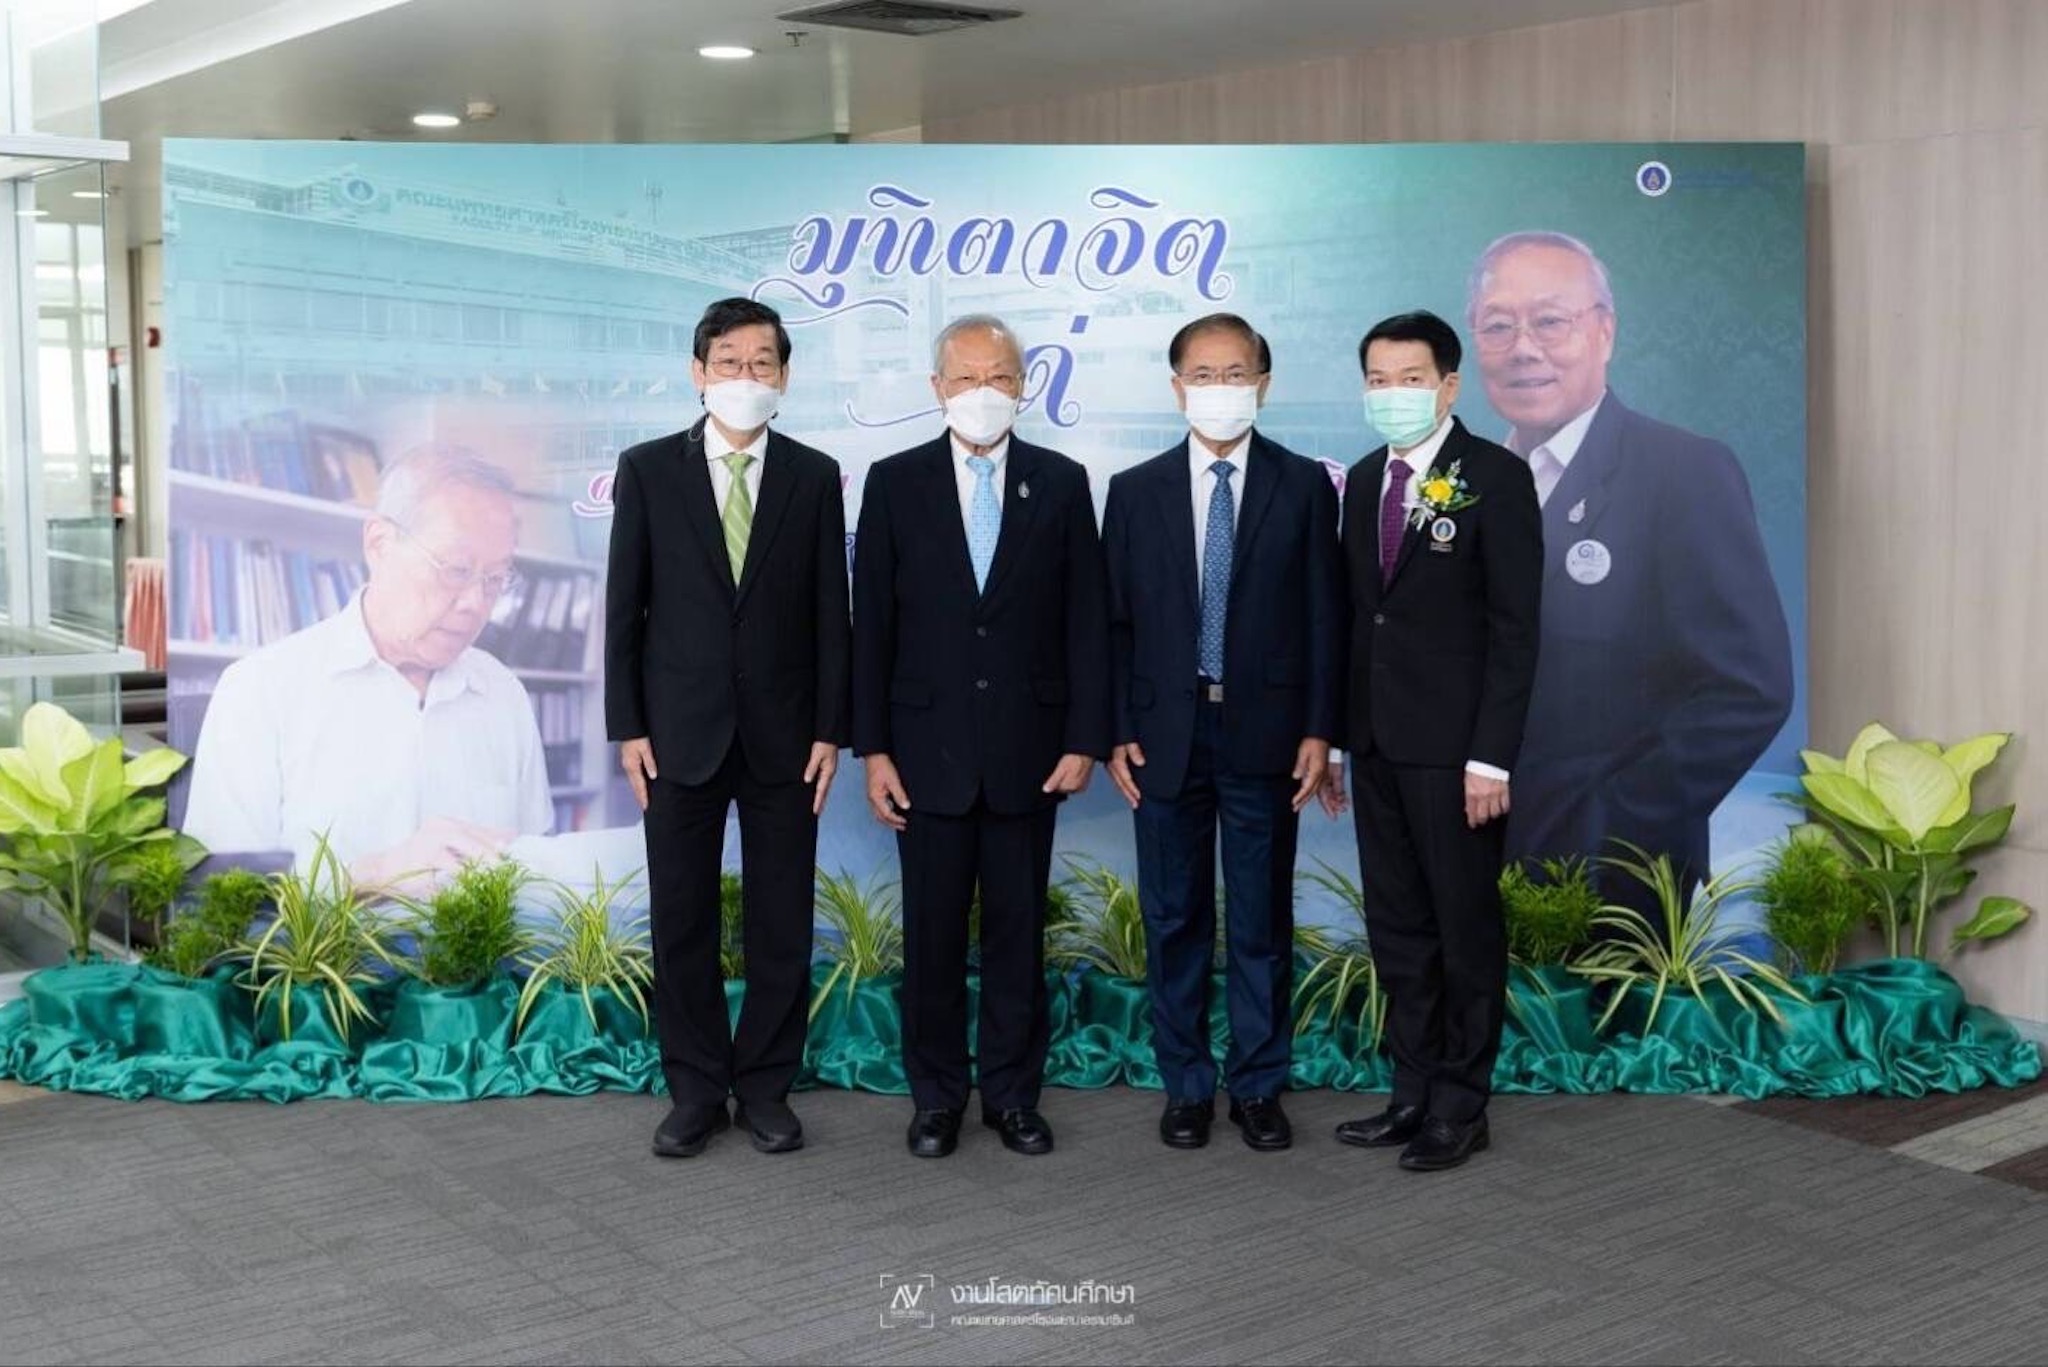 มุฑตาจิต ศ.เกียรติคุณ นพ.ประกิต วาทีสาธกกิจ ในโอกาสได้รับรางวัล Dr.LEE Jong-wook Memorial Prize for Public Health องค์การอนามัยโลก ปี ค.ศ. 2022